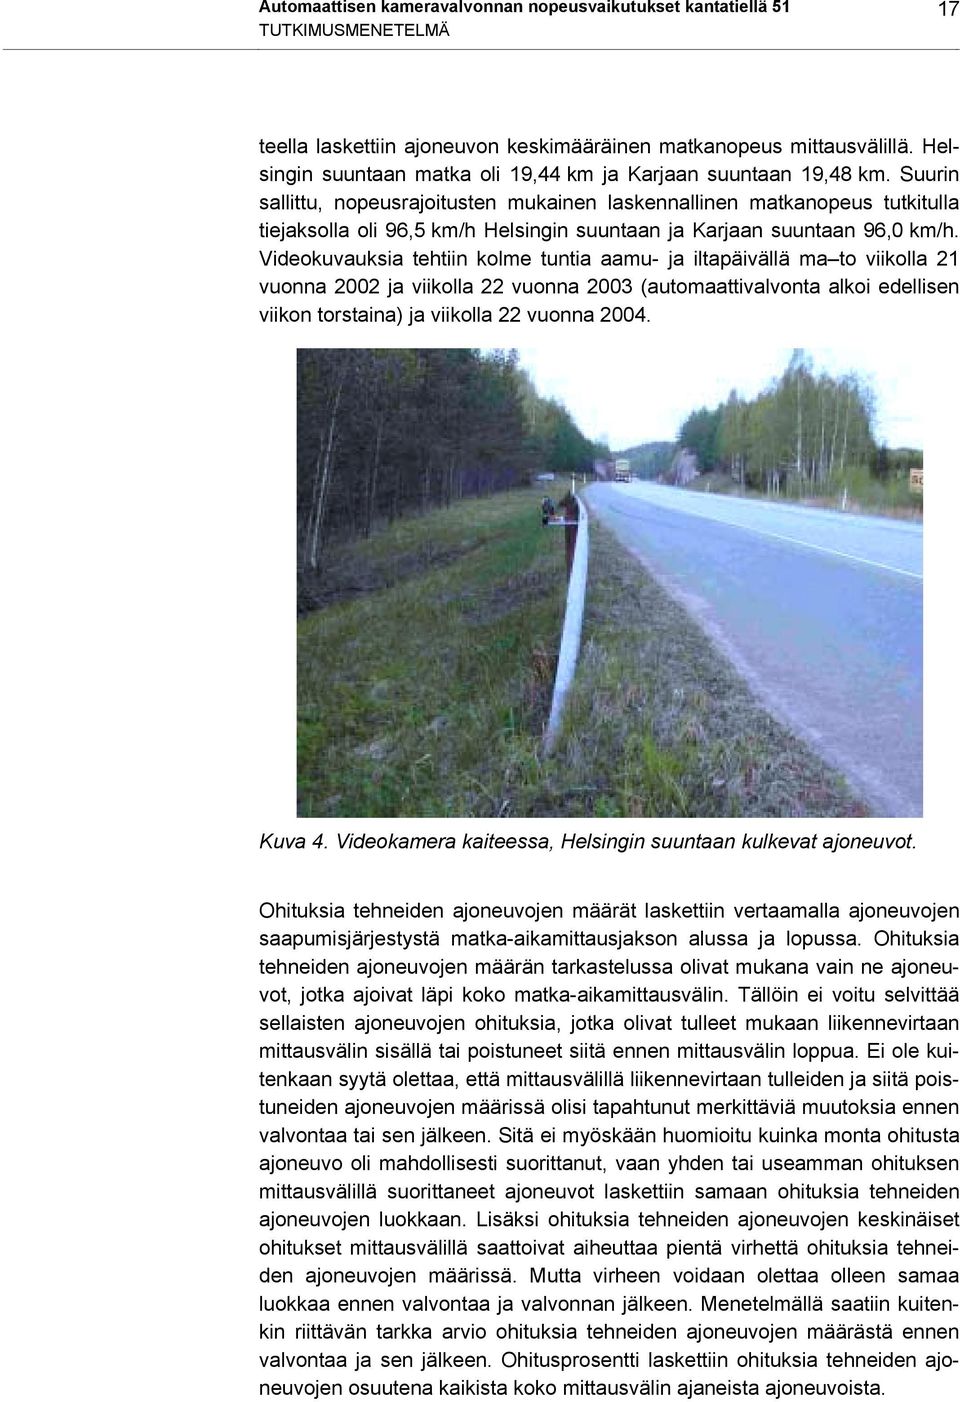 Suurin sallittu, nopeusrajoitusten mukainen laskennallinen matkanopeus tutkitulla tiejaksolla oli 96,5 km/h Helsingin suuntaan ja Karjaan suuntaan 96,0 km/h.